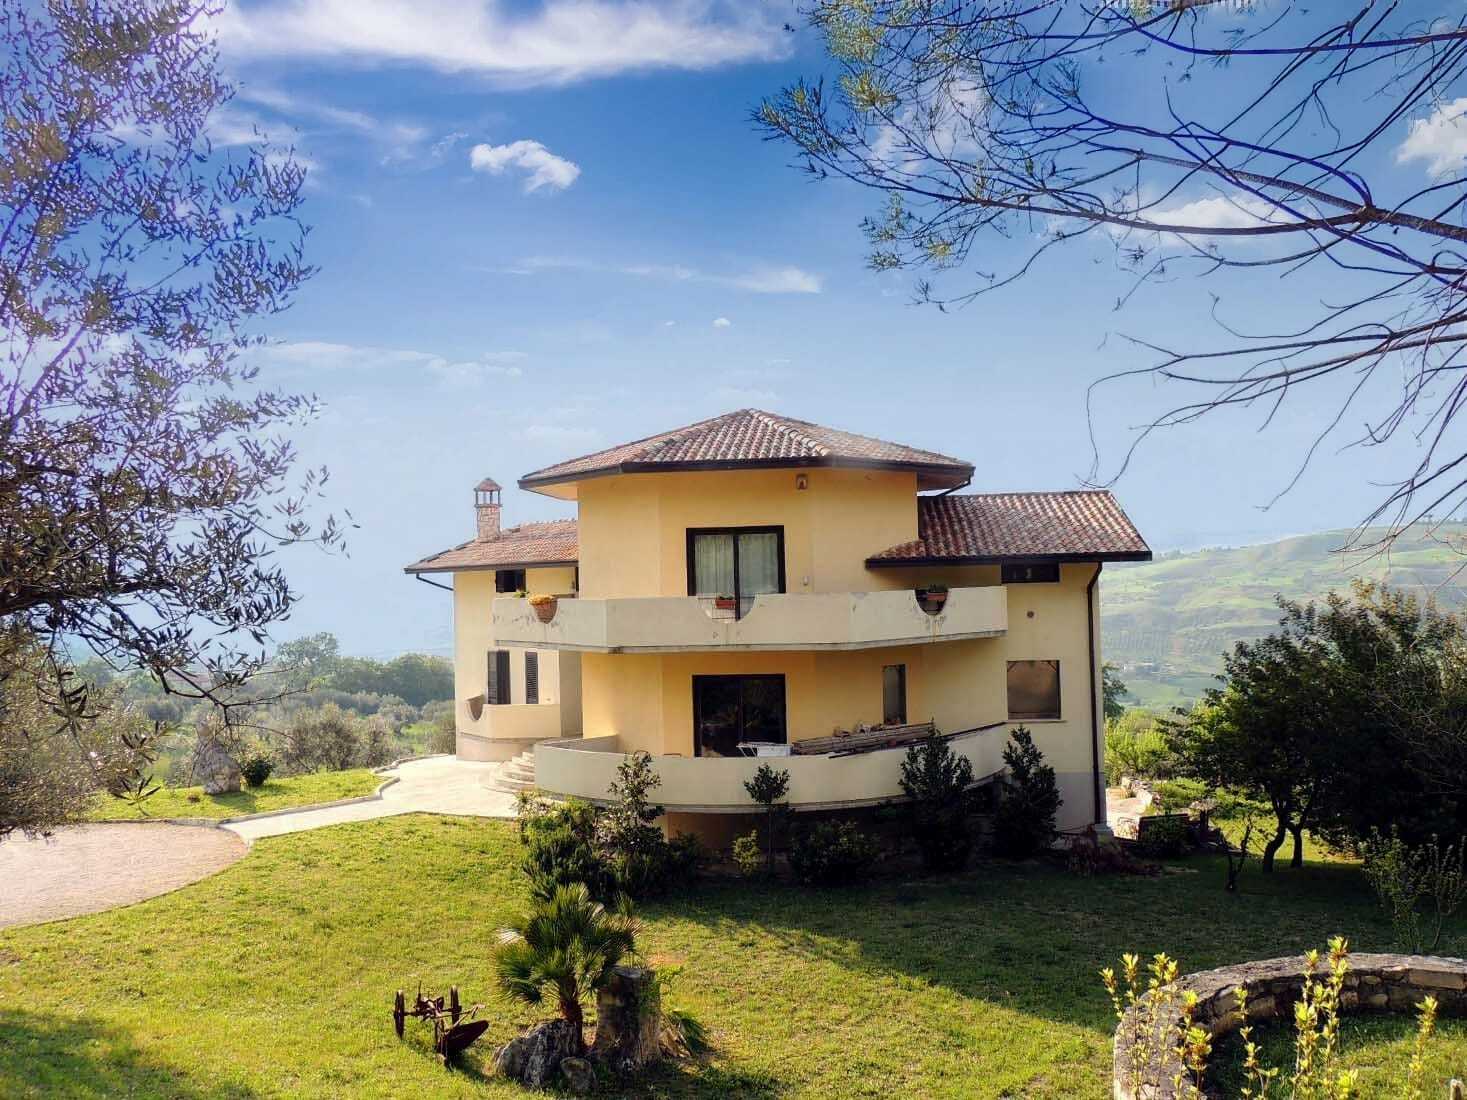 A vendre villa in zone tranquille San Valentino in Abruzzo Citeriore Abruzzo